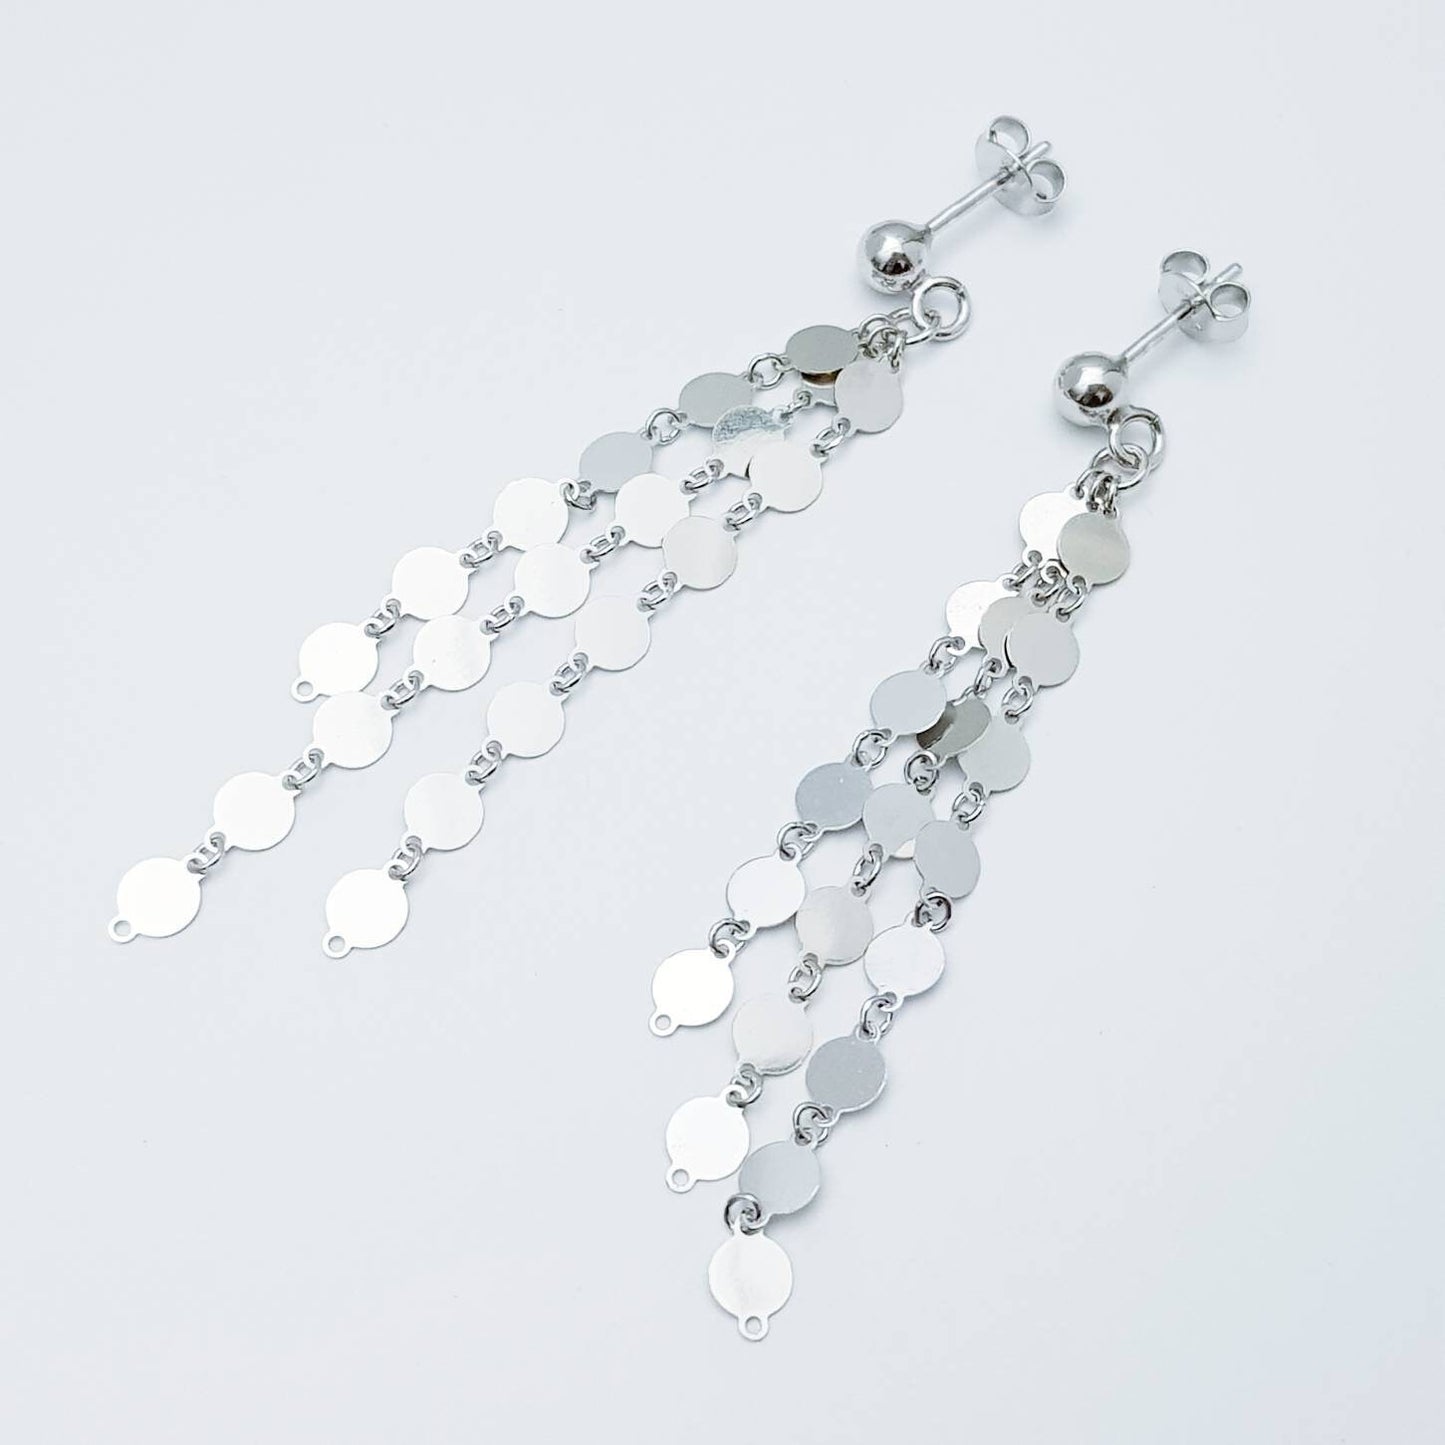 Light sterling silver earrings, festival earrings, drop and dangle earrings